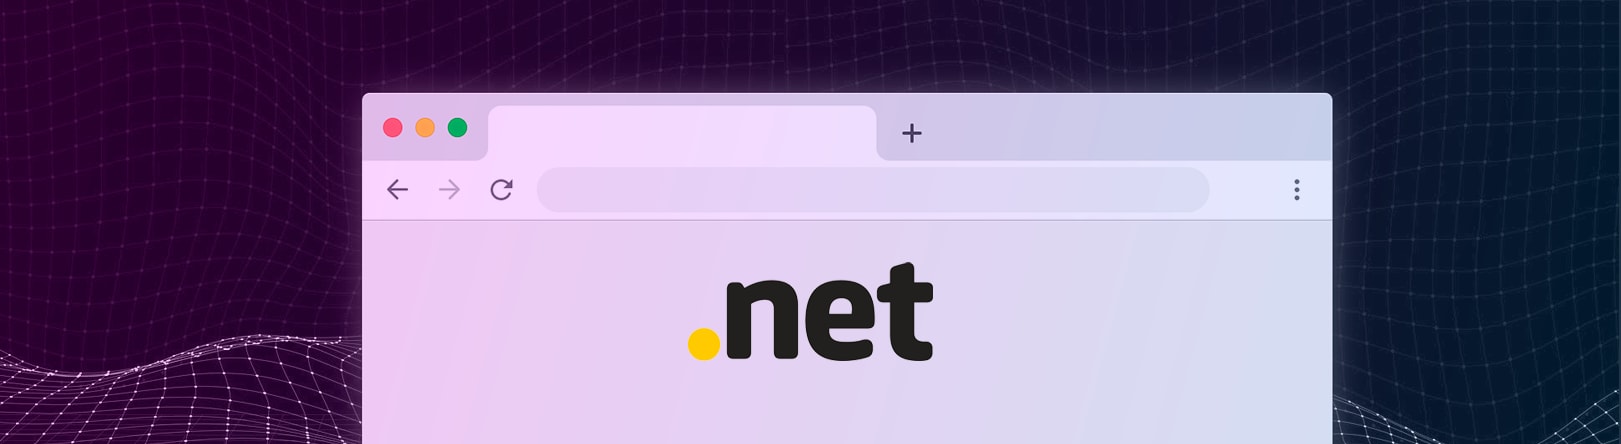 домен net